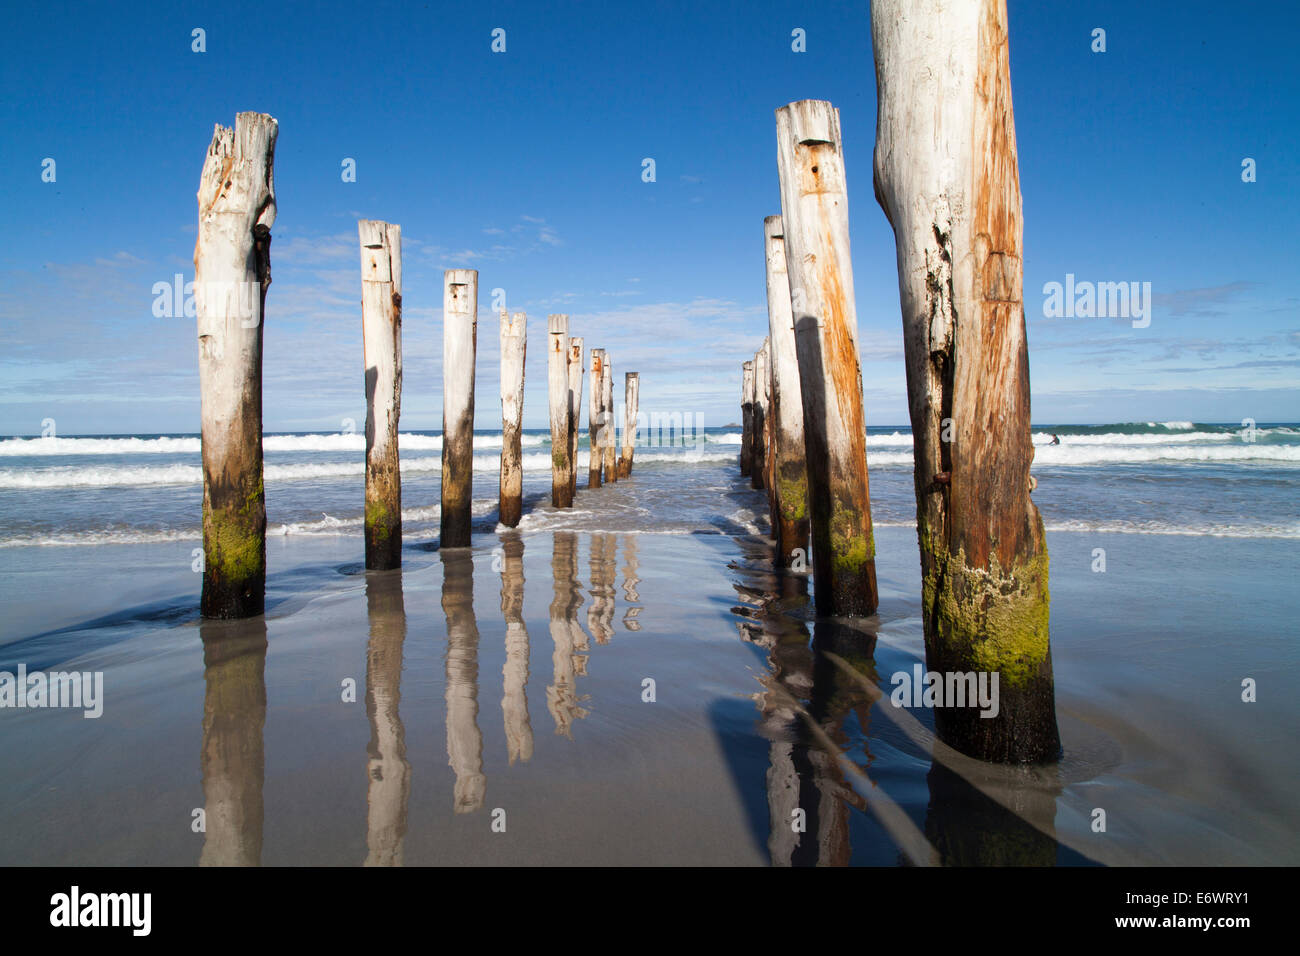 Les pilotis de bois d'une ancienne jetée, St Clair Beach, Dunedin, Otago, île du Sud, Nouvelle-Zélande Banque D'Images